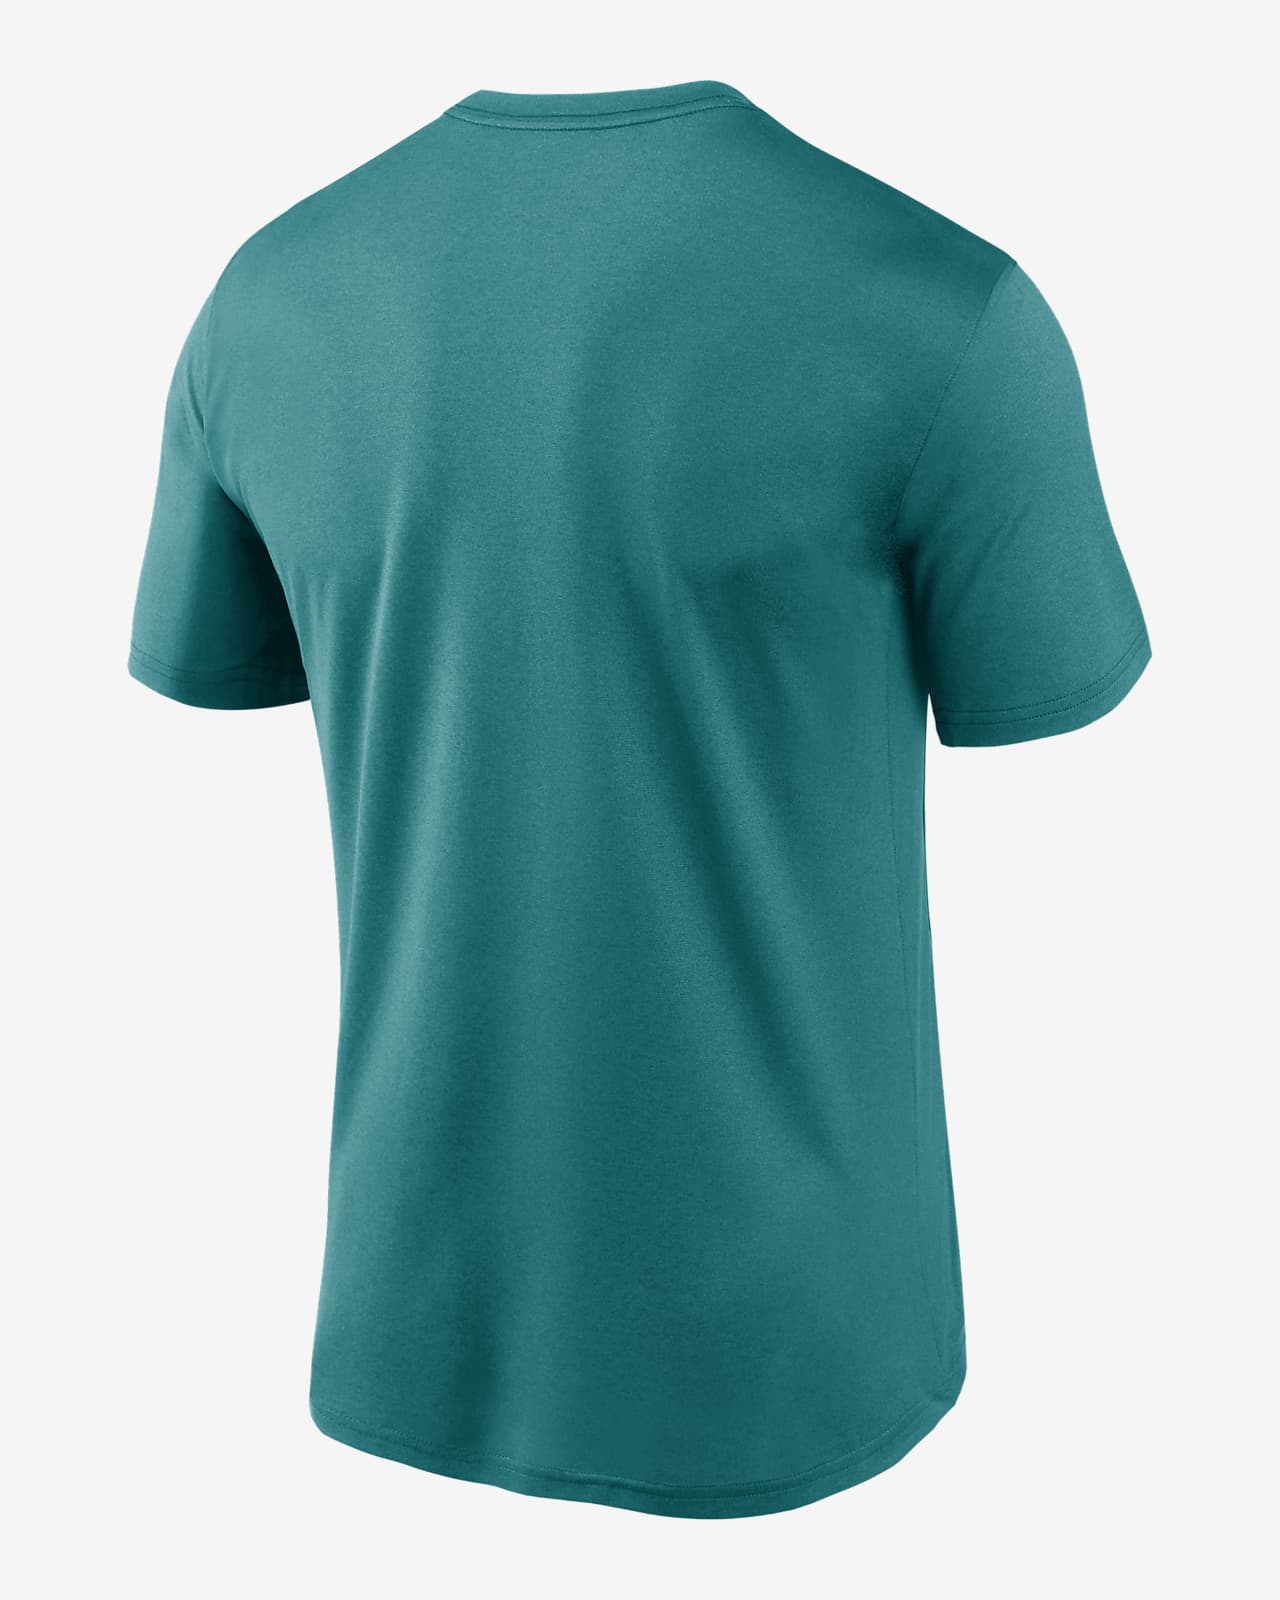 Nike Dri-Fit Legend Wordmark (MLB Tampa Bay Rays) Men's T-Shirt